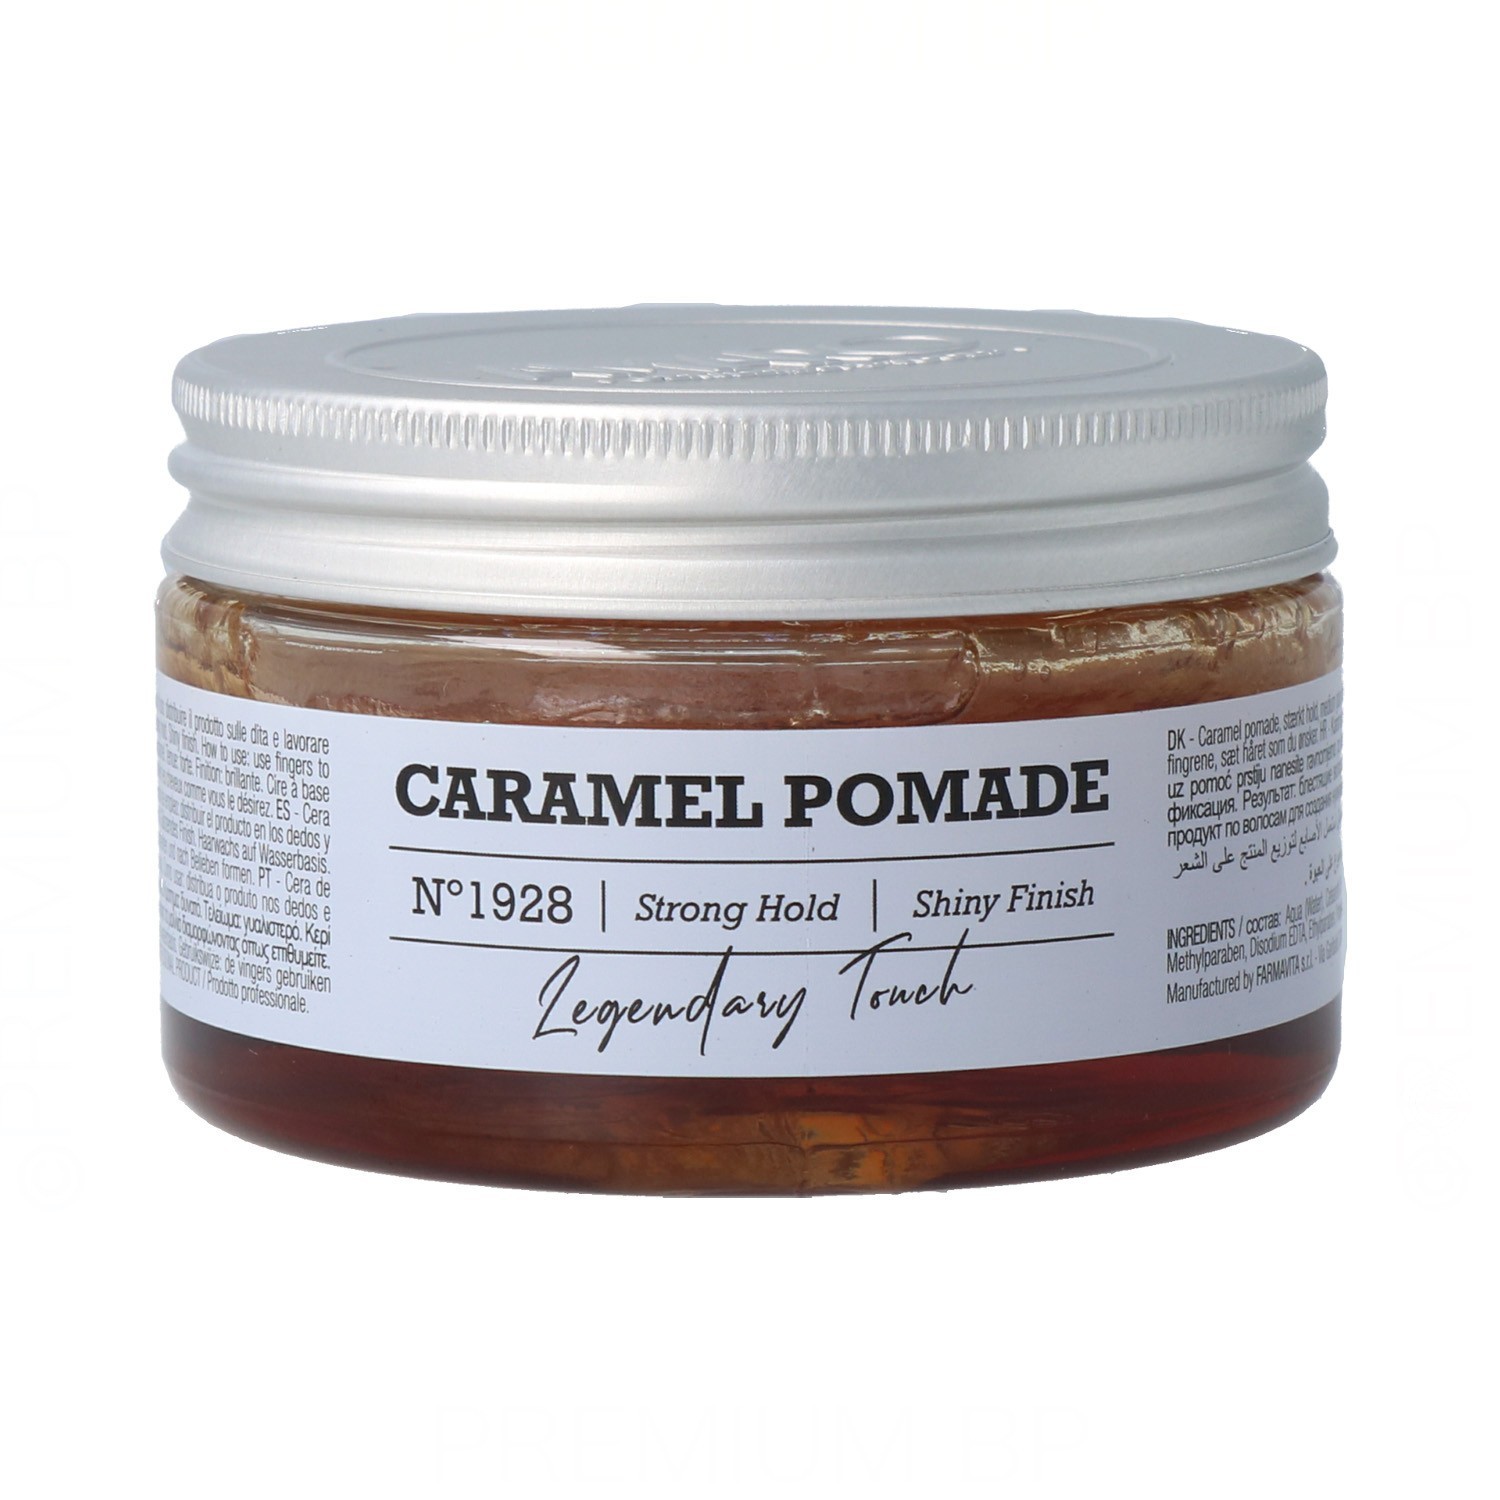 Farmavita Amaro Caramel Pomada 100 ml